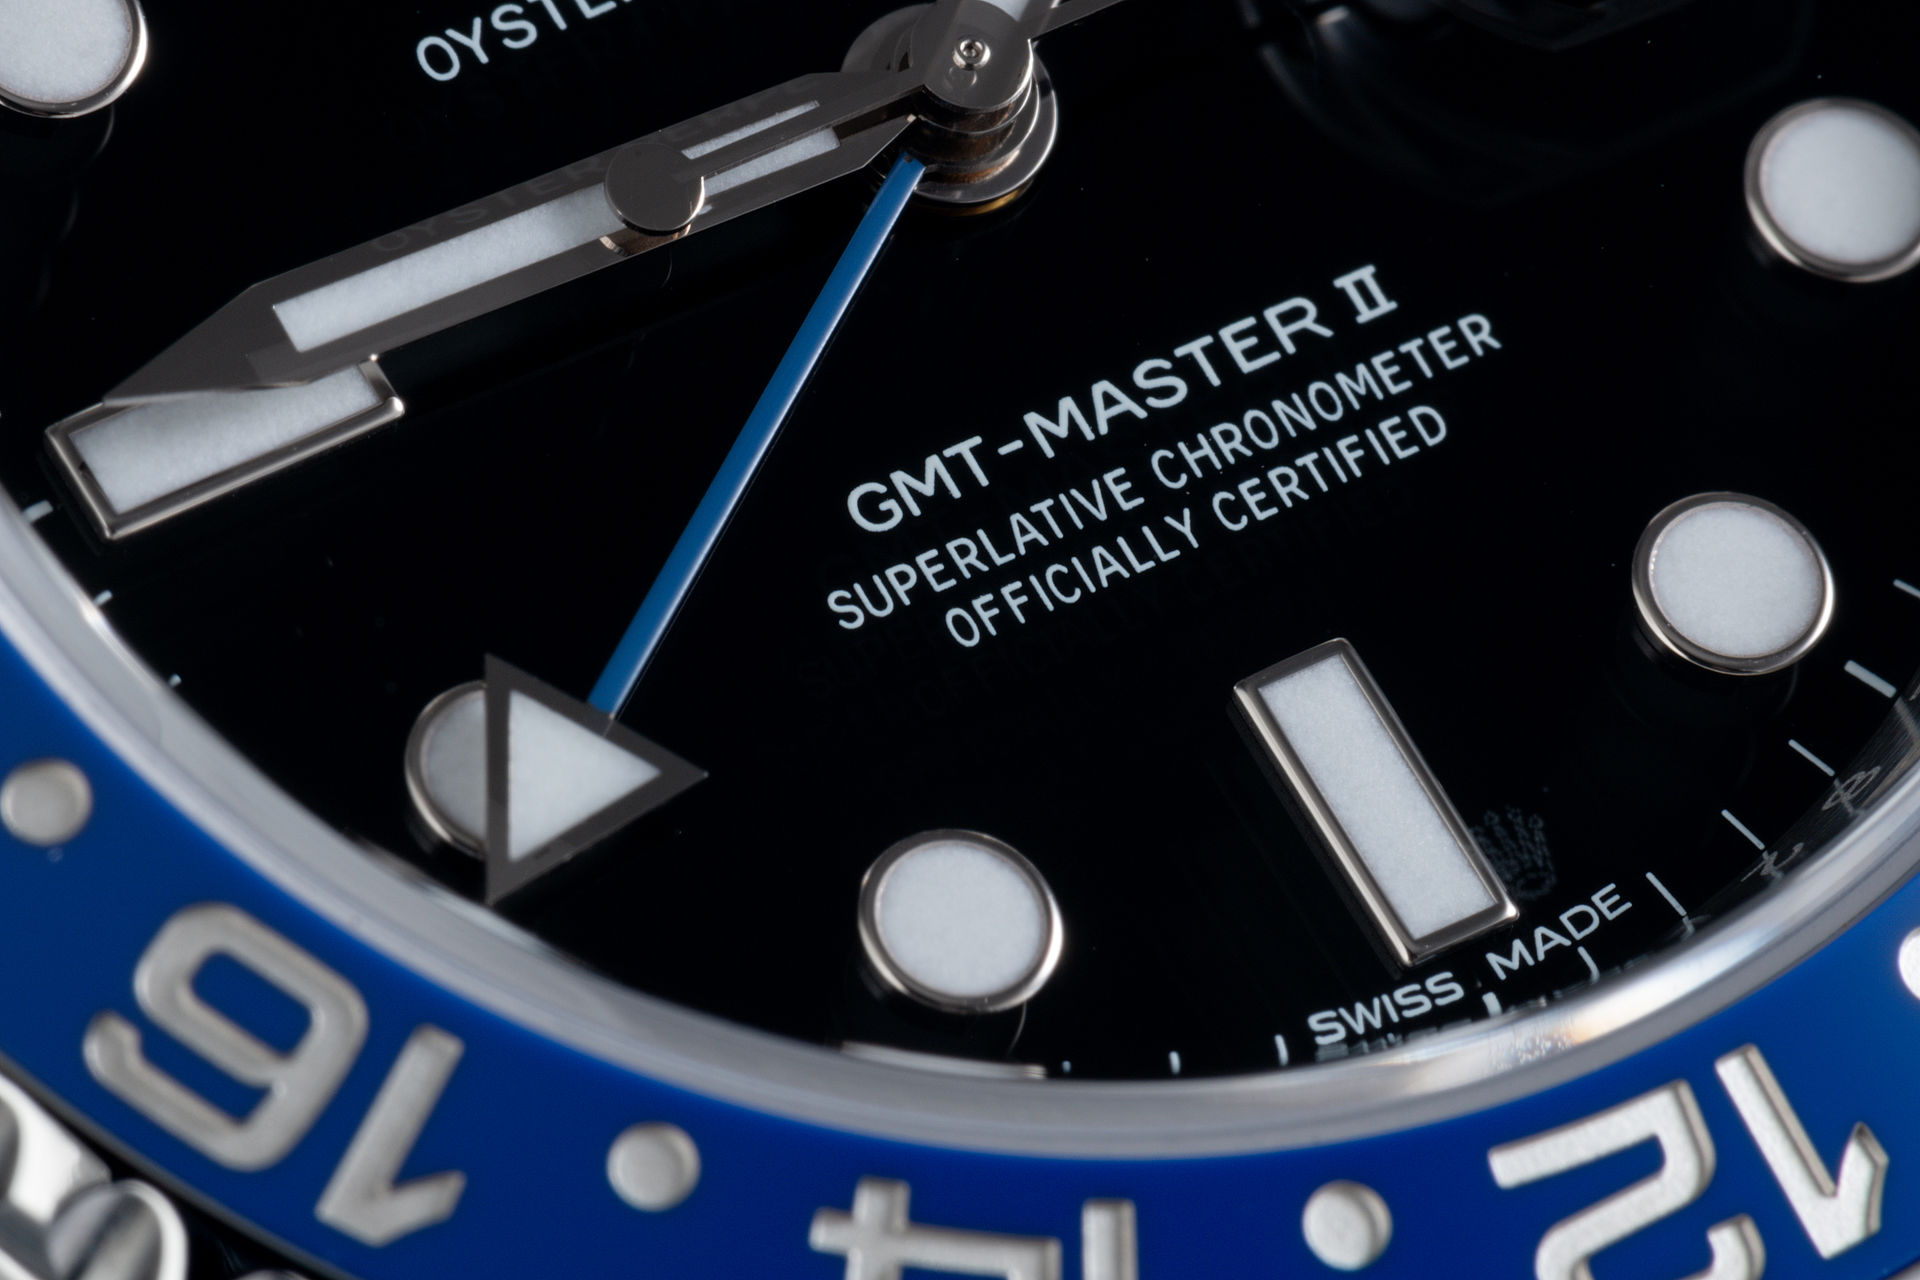 ref 116710BLNR | 'Complete Set' 5 Year Warranty | Rolex GMT-Master II